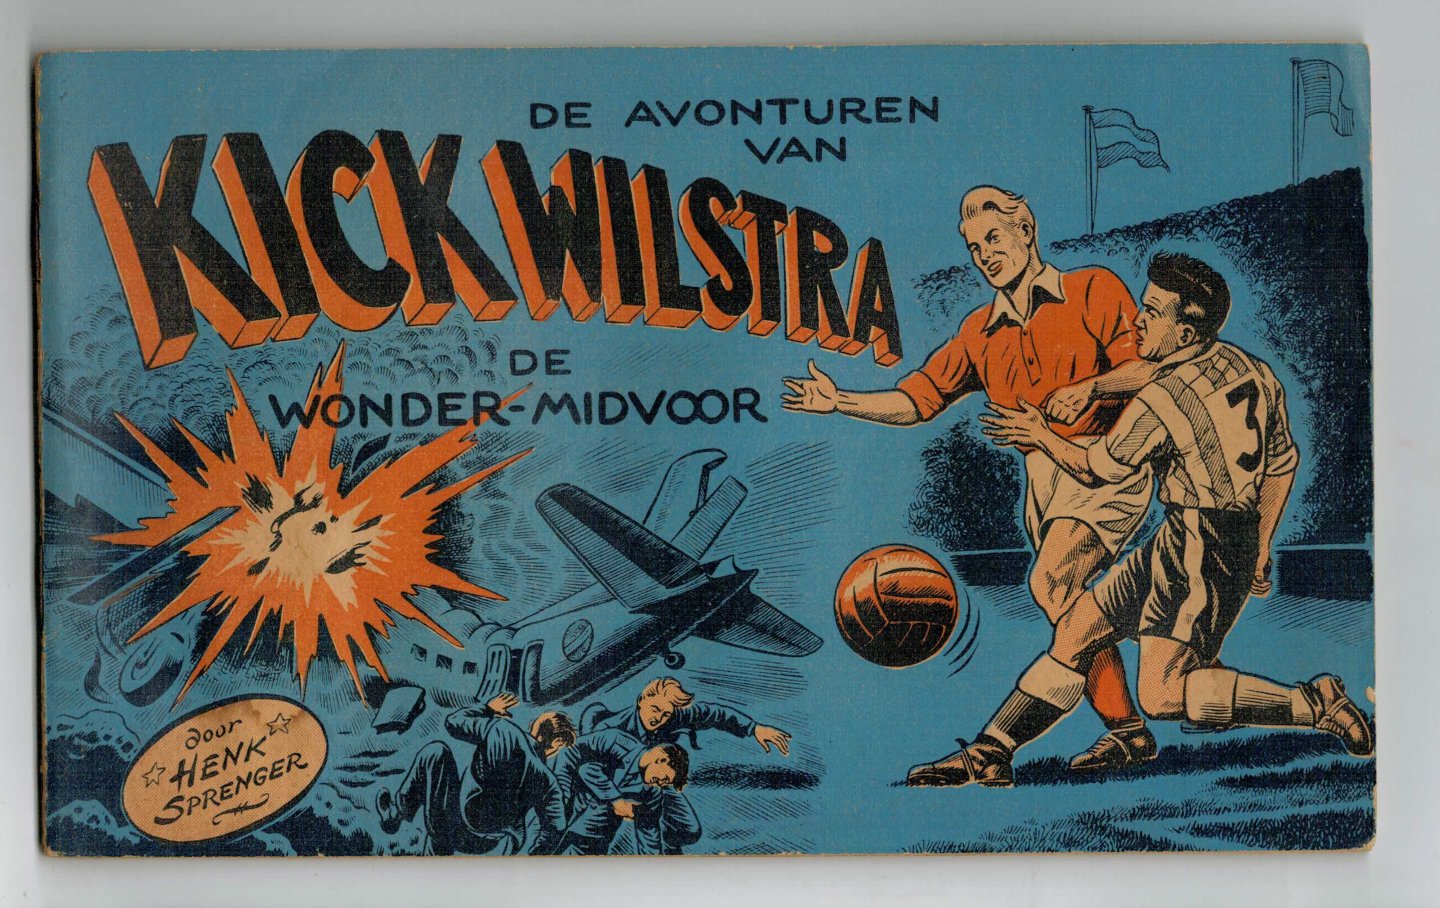 Sprenger, Henk - Kick Wilstra no. 2: De avonturen van wonder-midvoor Kick Wilstra deel 2 eerste druk geen uitgever vermeld